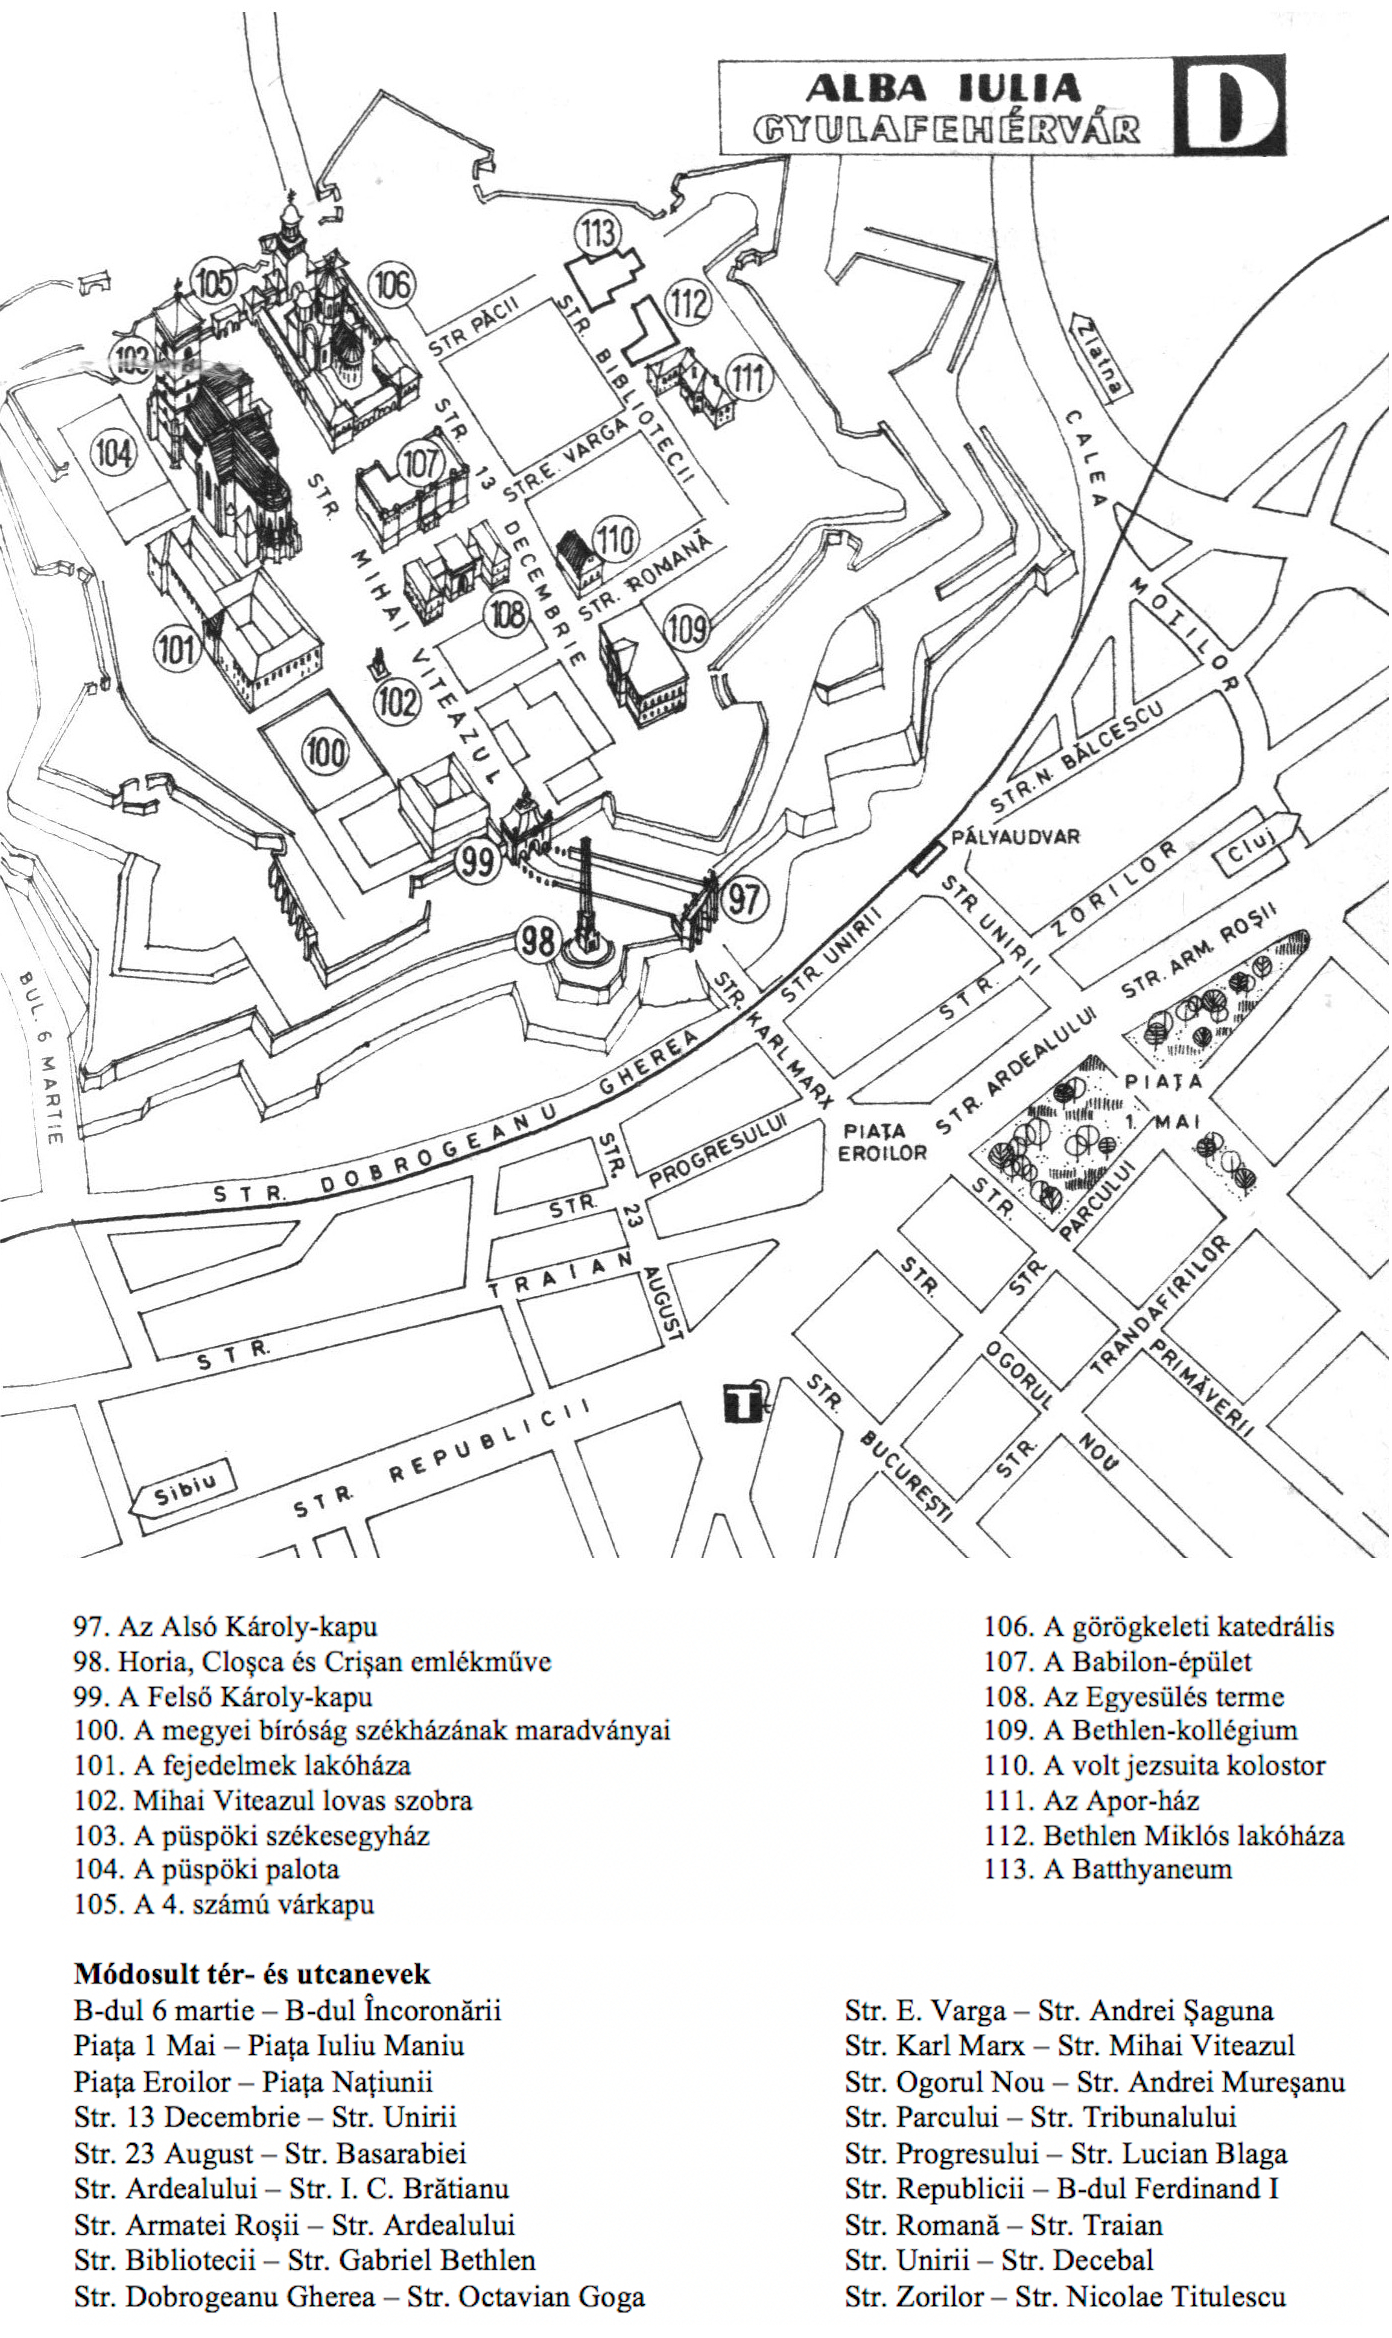 Gyulafehérvár térképe